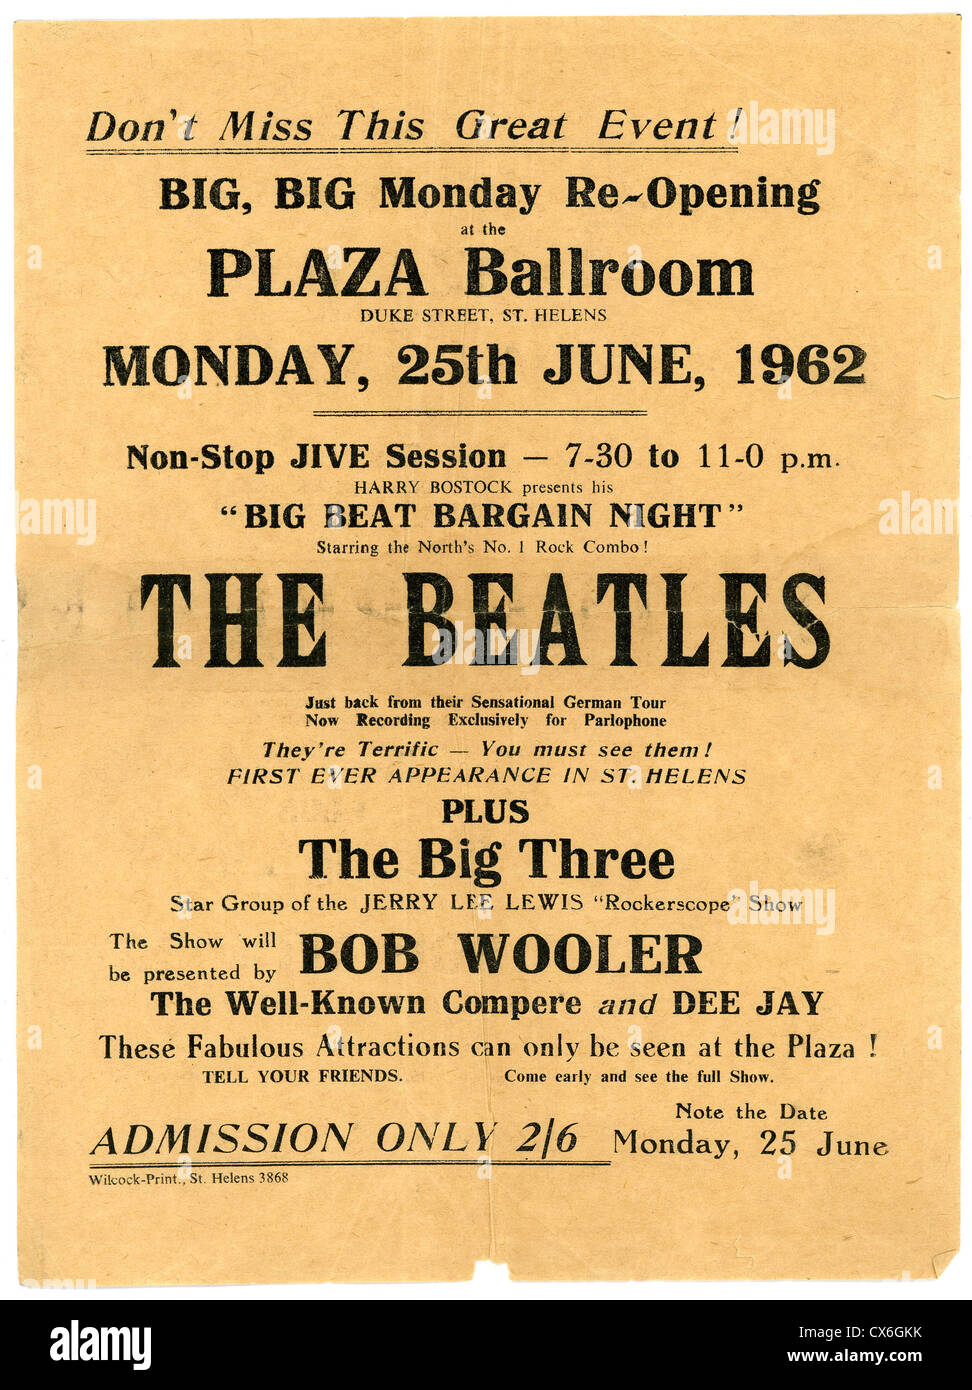 000533 - The Beatles Concert circulaire de la Plaza Bal, St Helens le 25 juin 1962 Banque D'Images